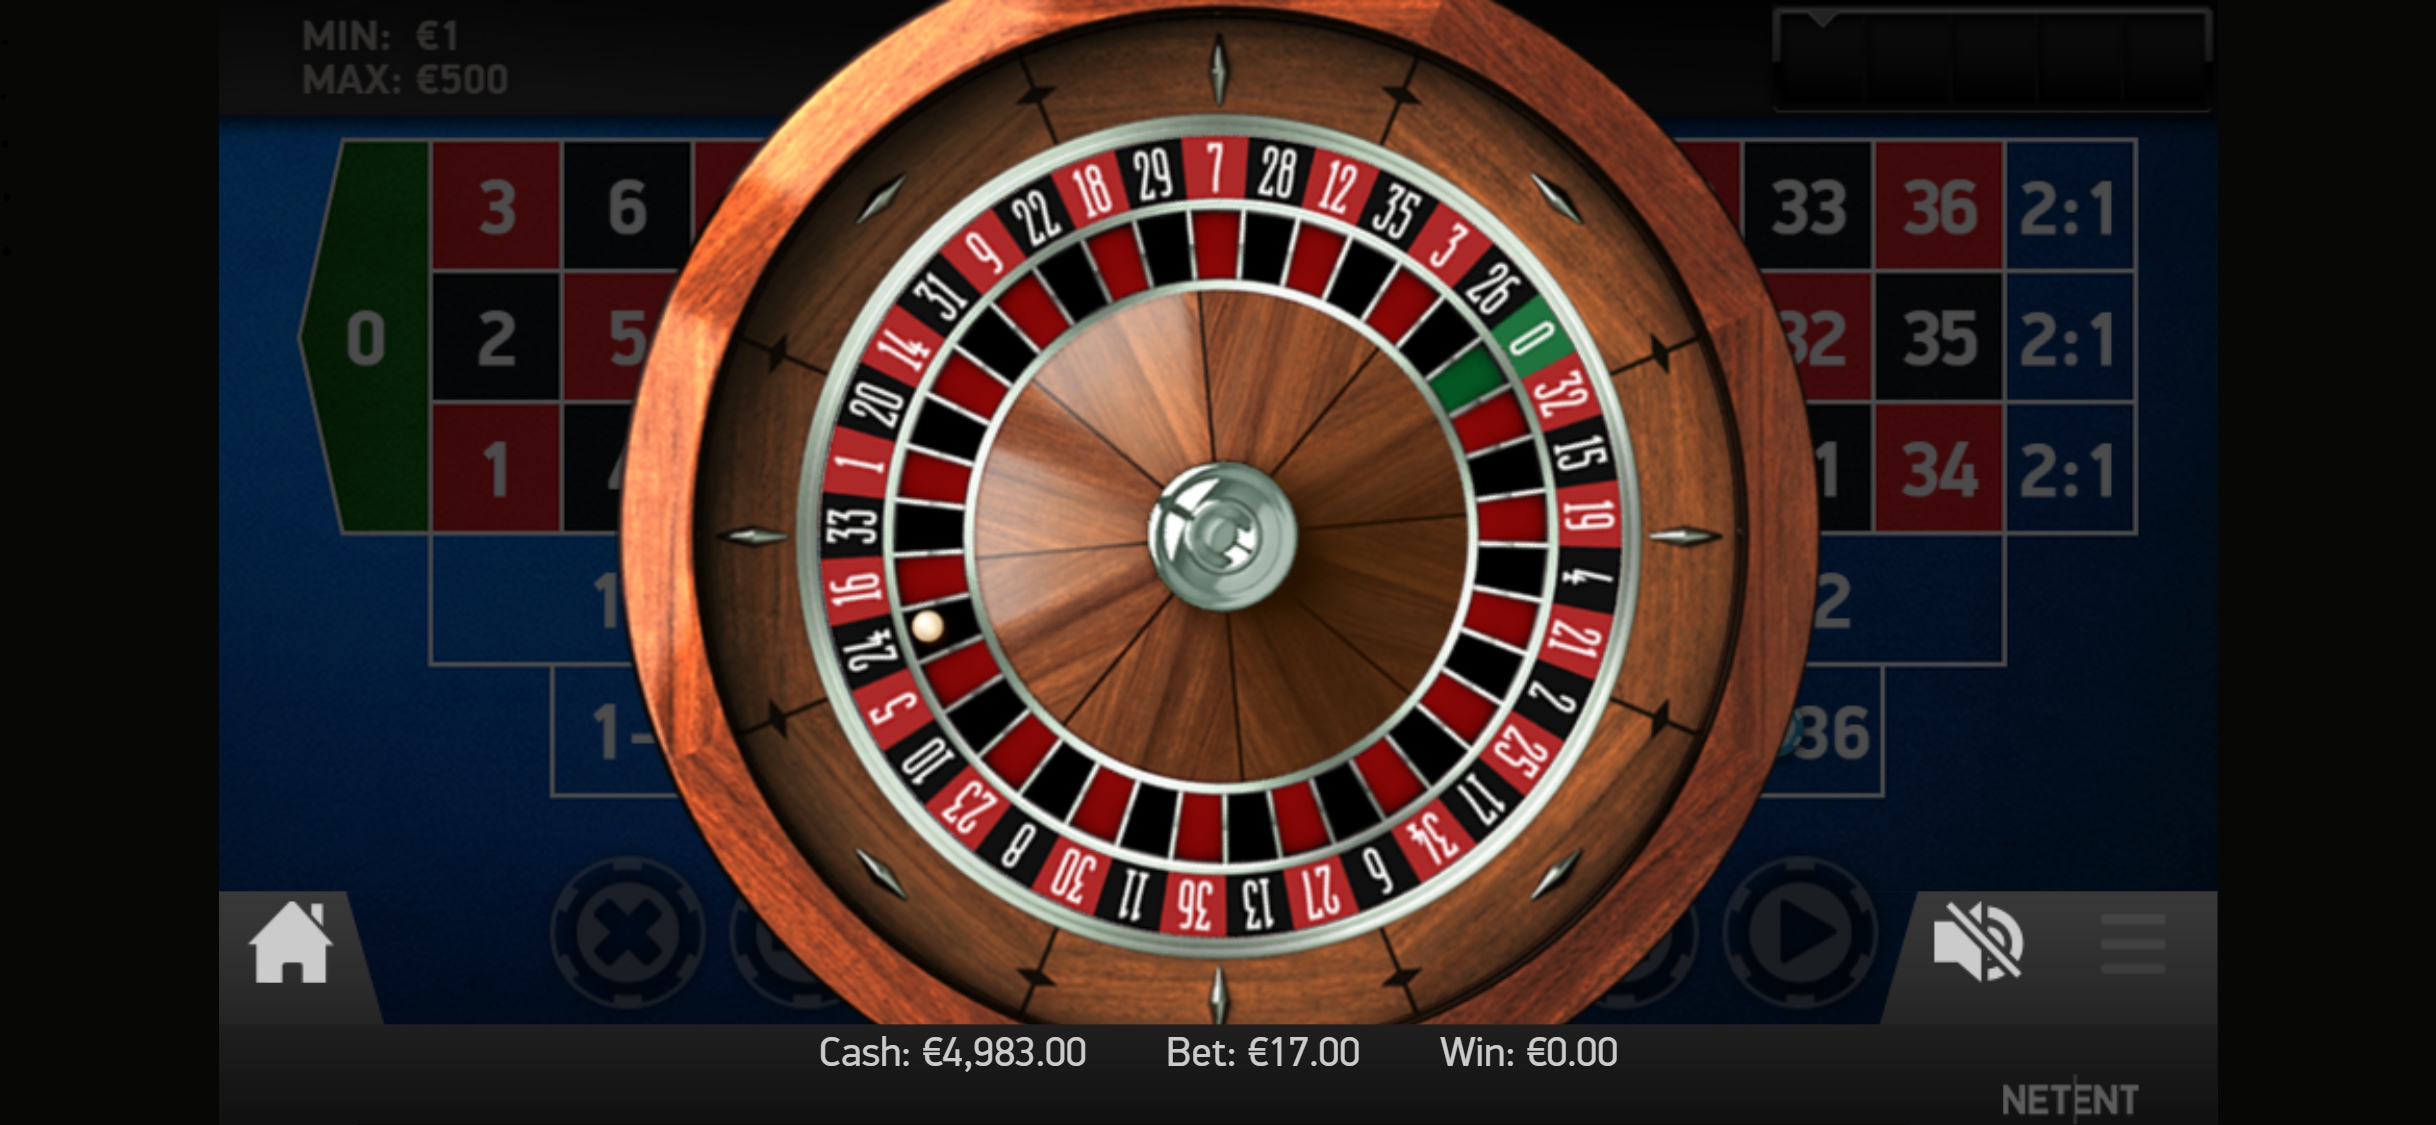 Pronto Casino Mobile Casino Games Review